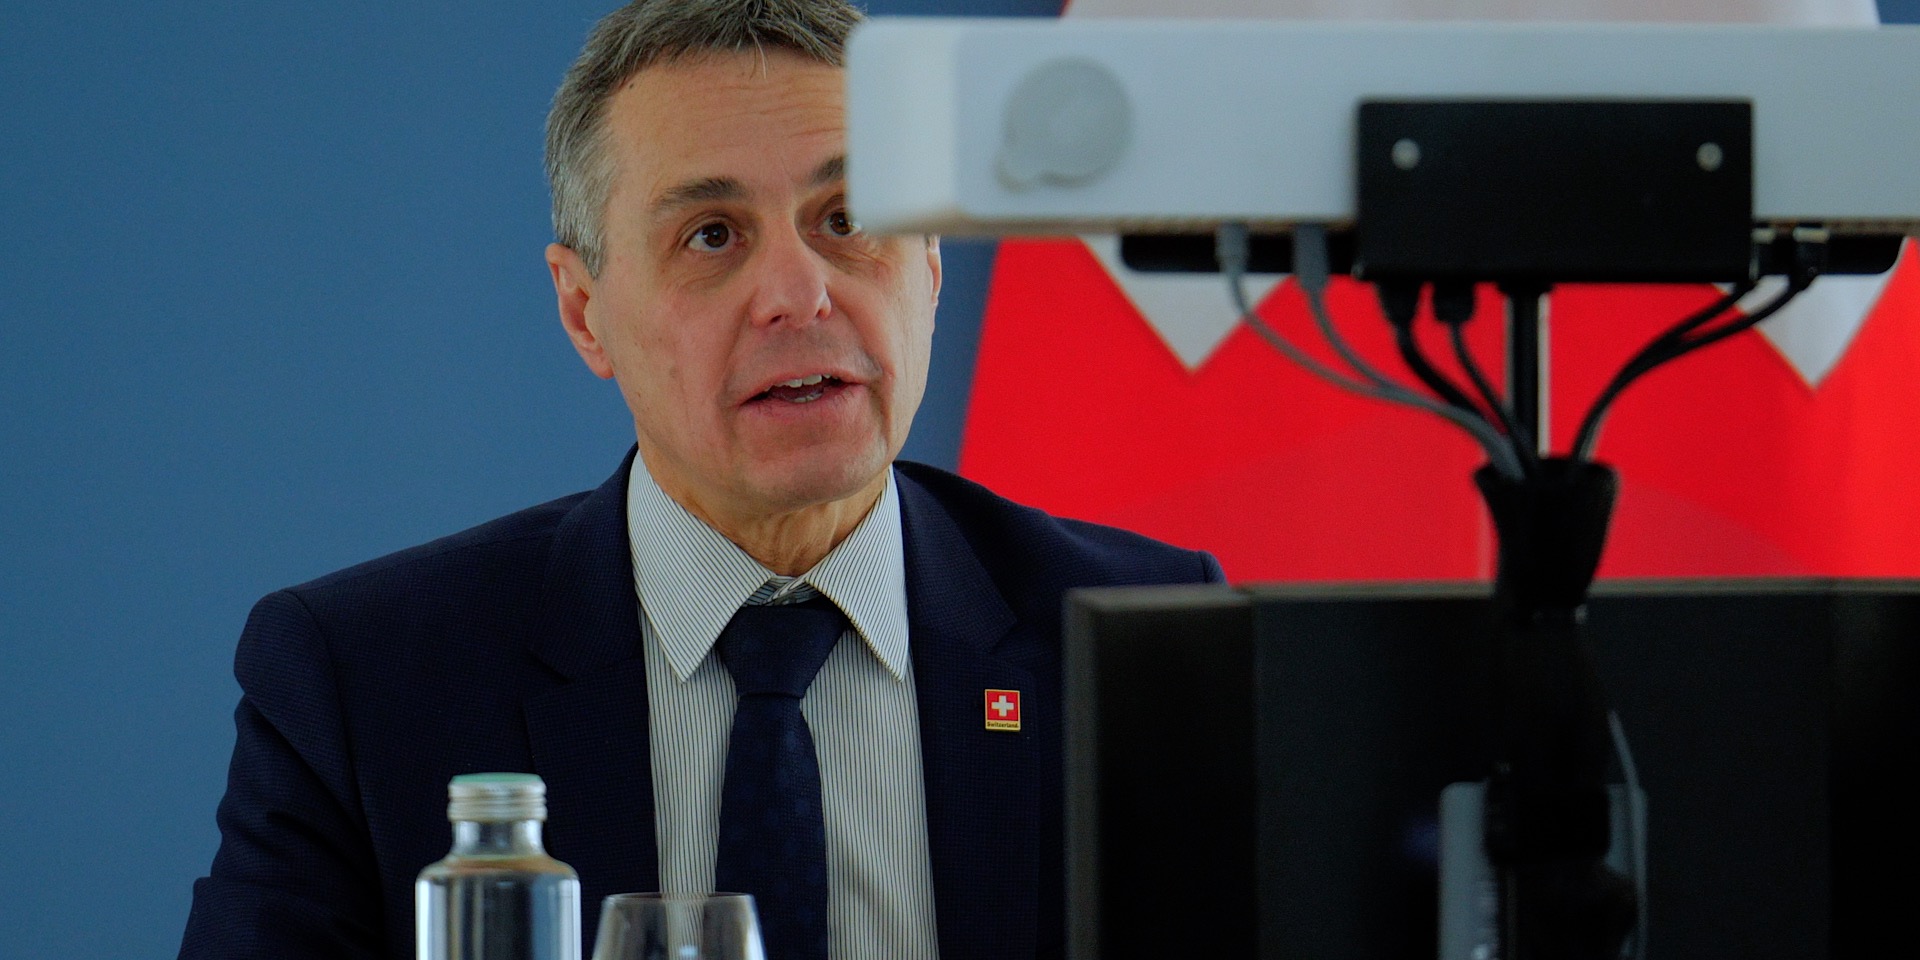 Il consigliere federale Ignazio Cassis davanti a una telecamera durante una conferenza virtuale, la bandiera svizzera in sottofondo.